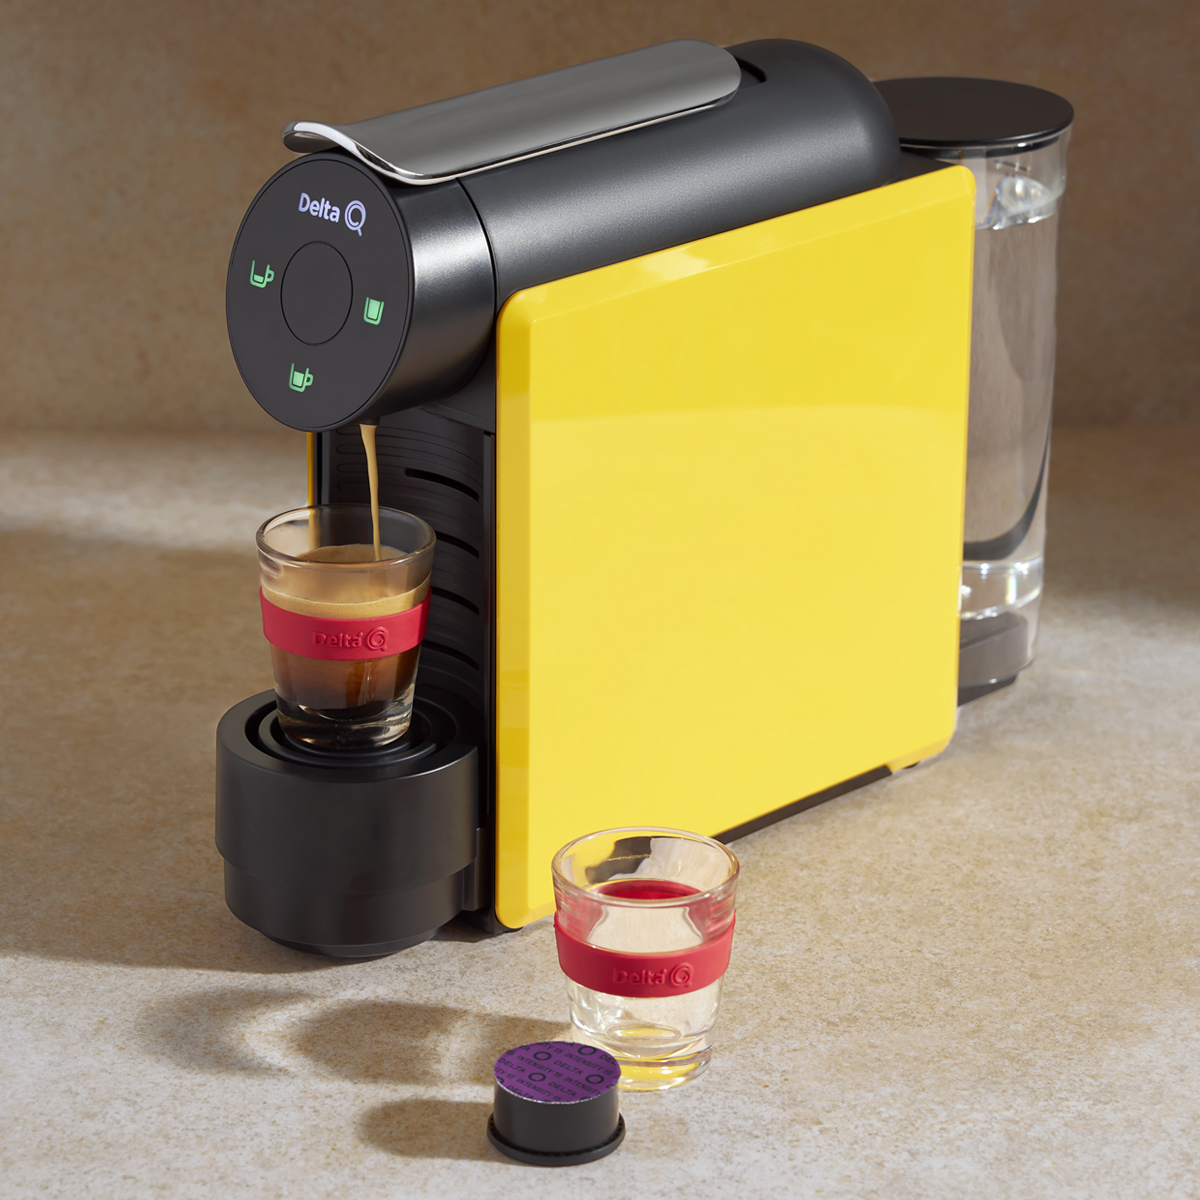 Delta Q MiniQool Espresso coffee machine [Review] 